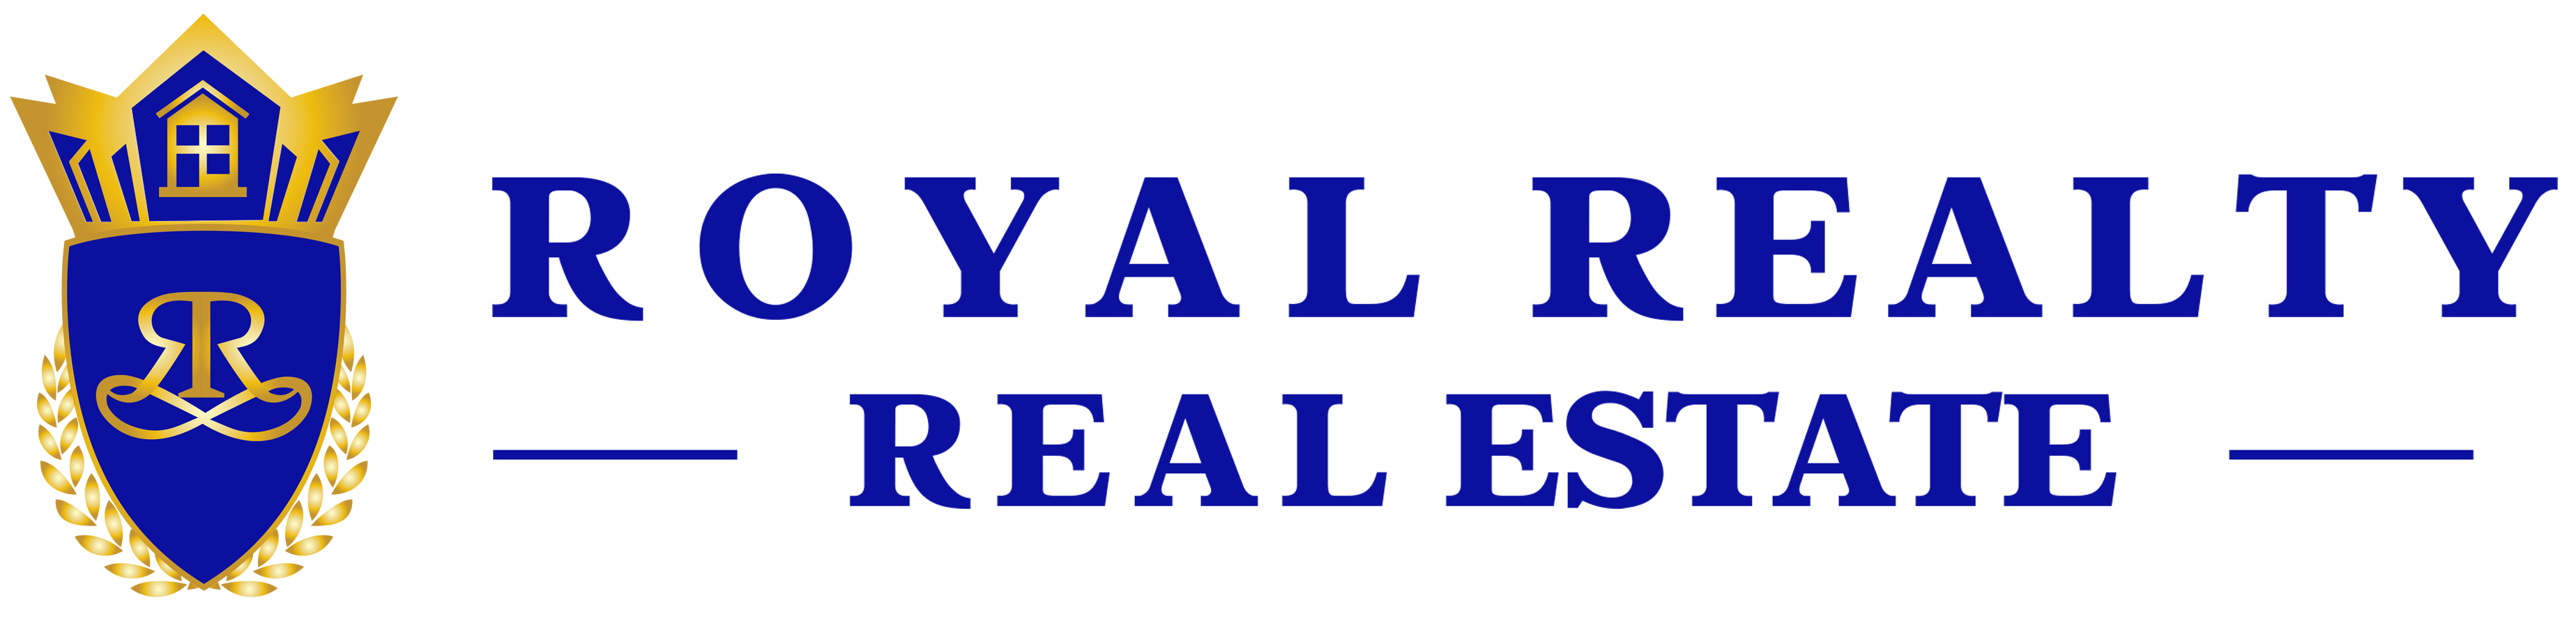 Royal Realty Real Estate